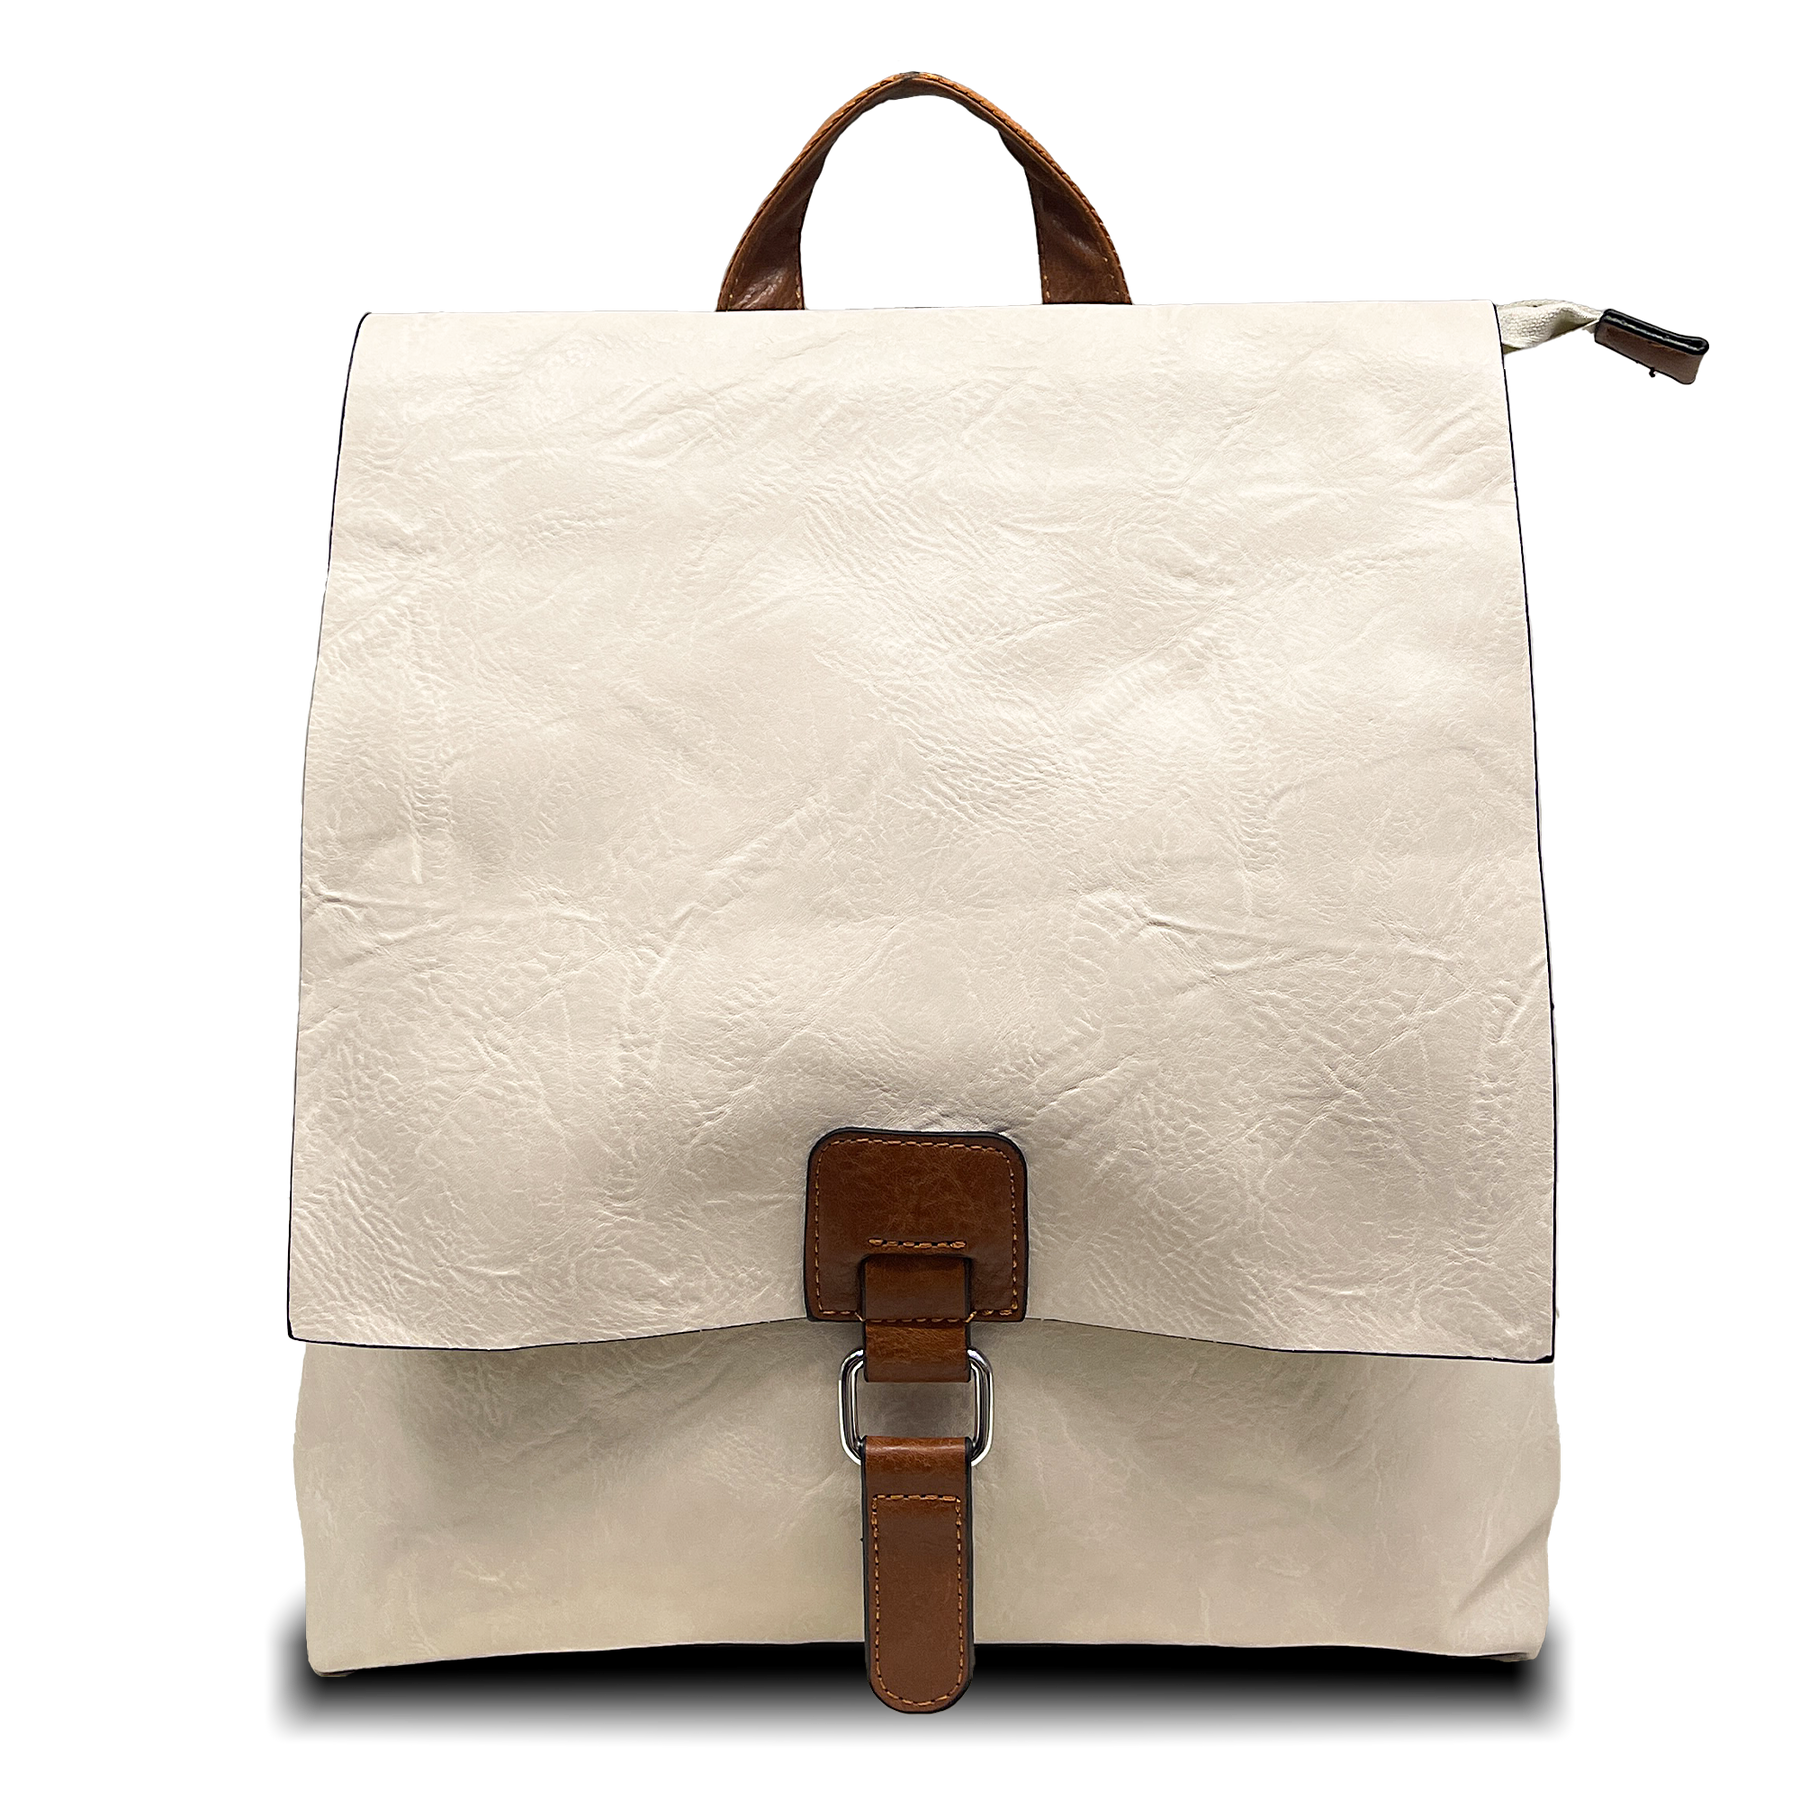 Transformovatelný batoh 2-in-1: Vintage styl, taška s dvojitým použitím s ramenním popruhem a batohem